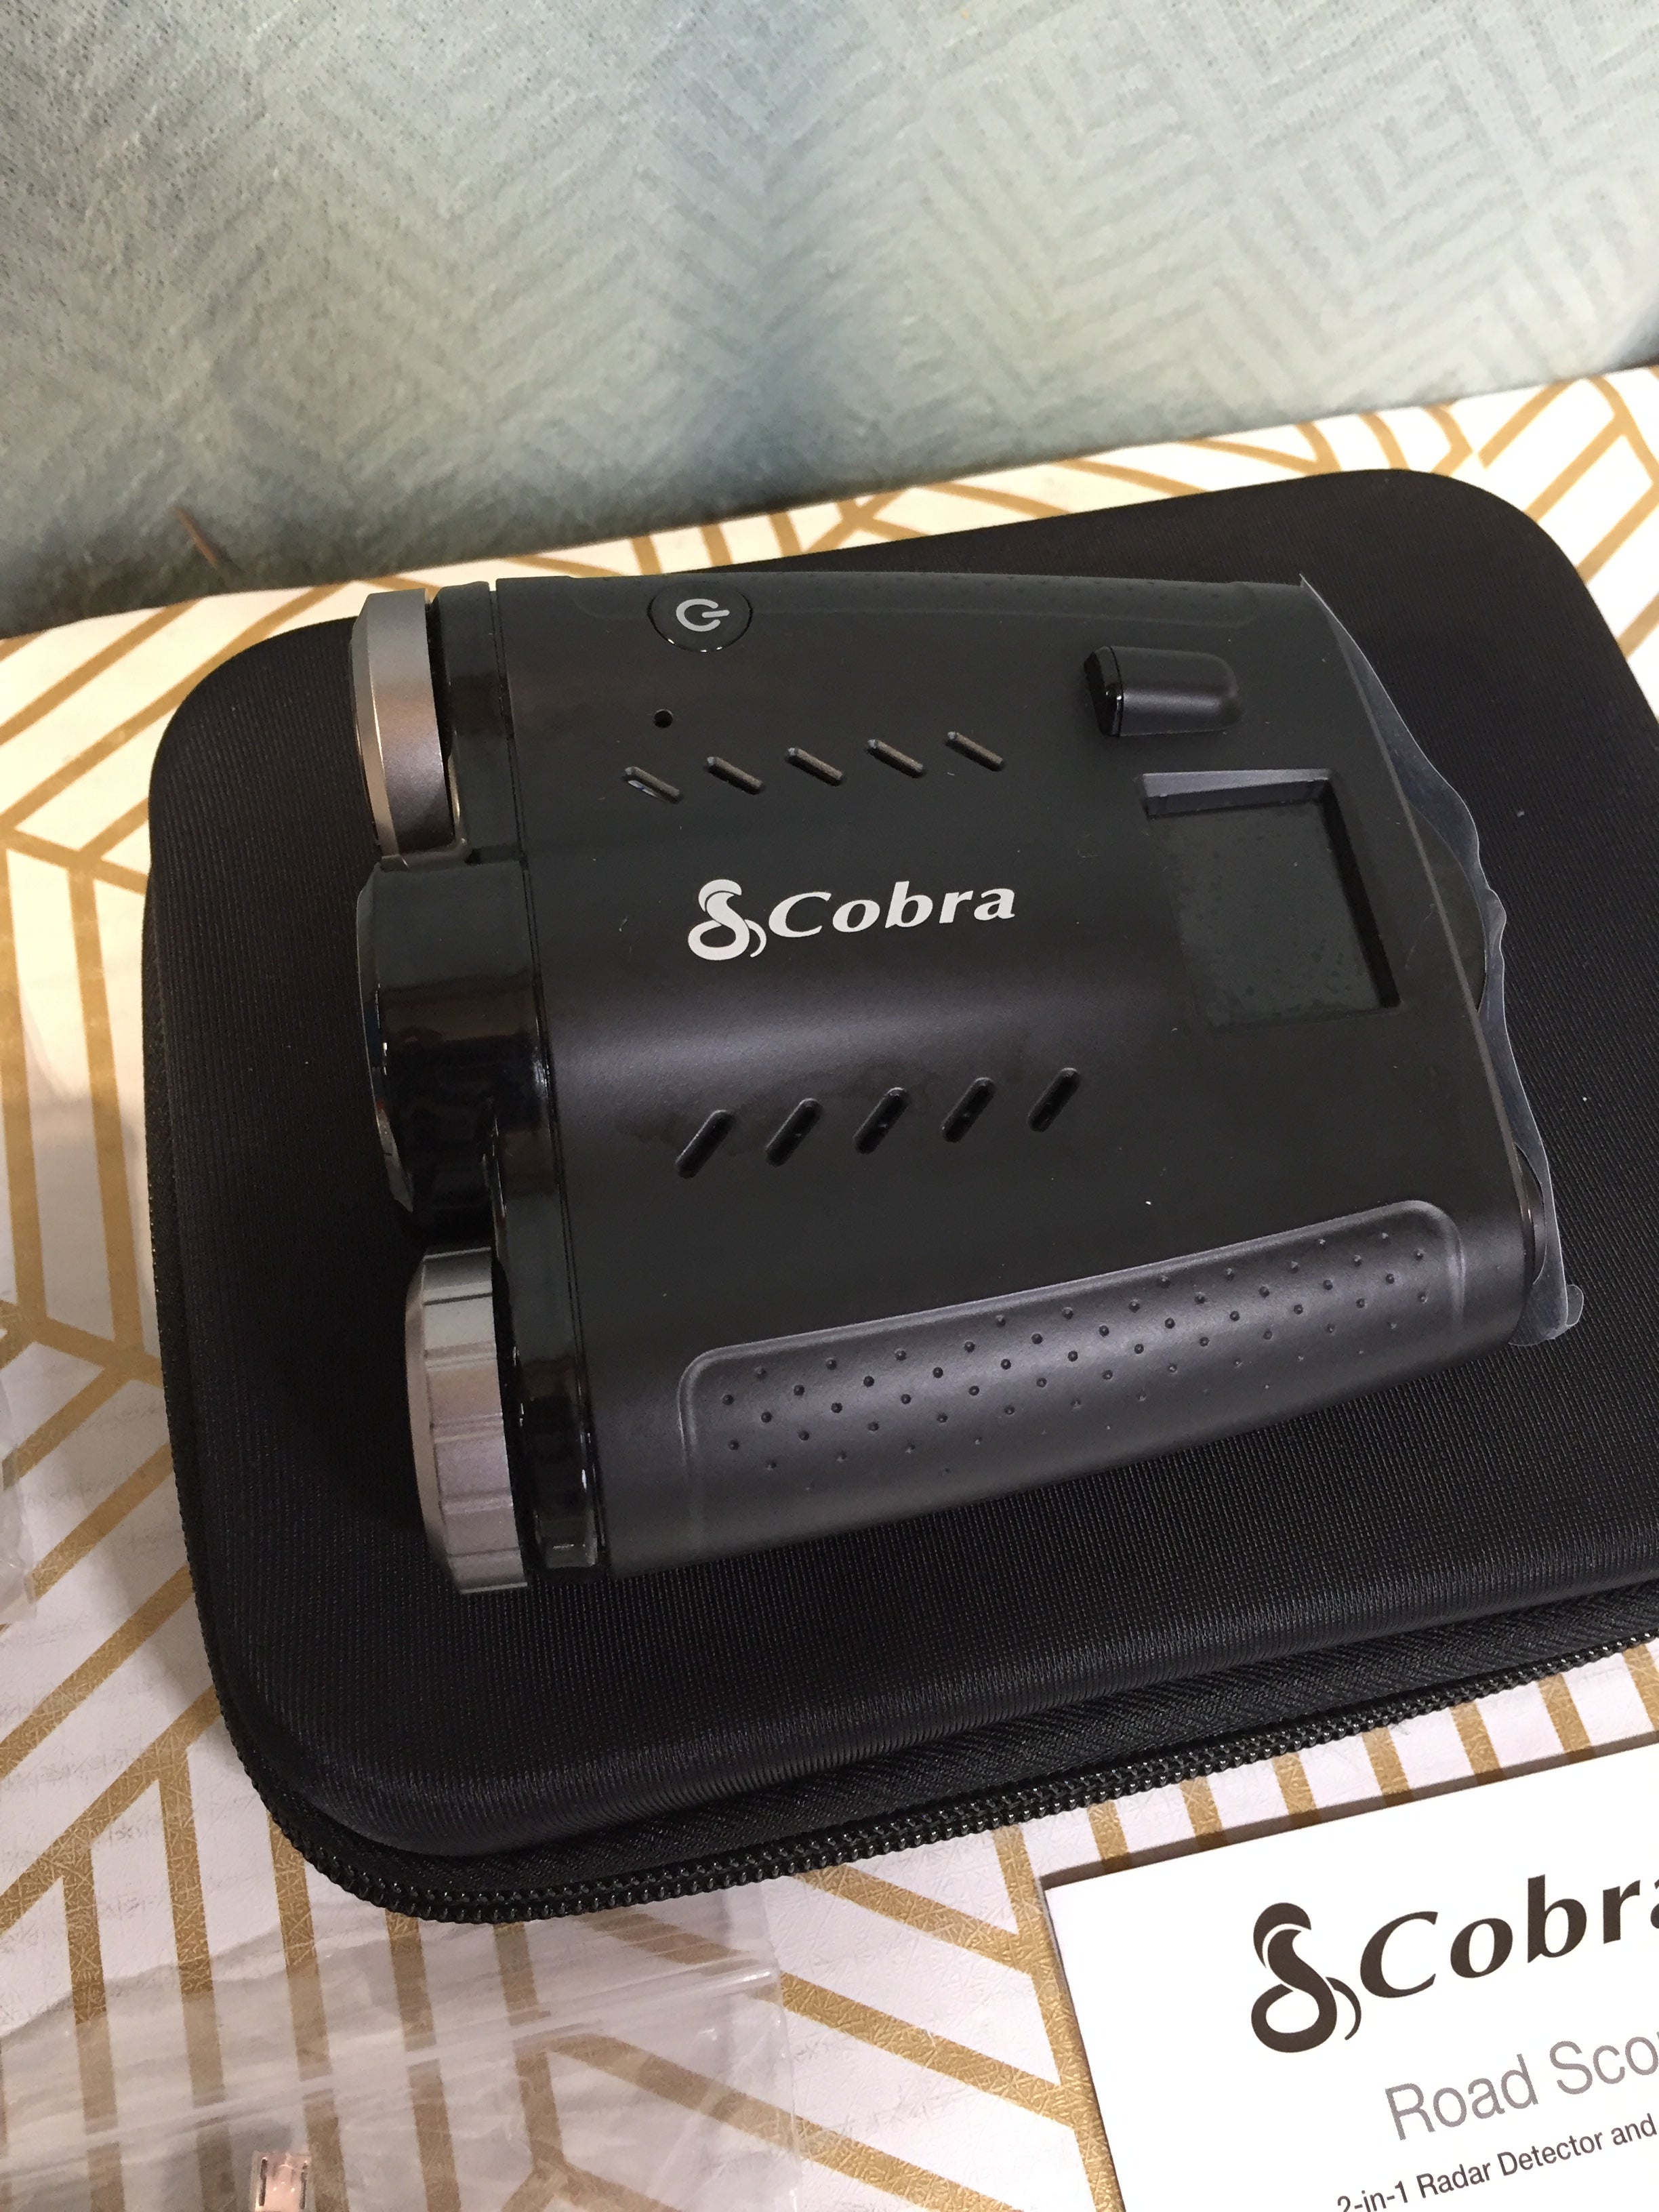 Cobra Road Scout Dash Cam and Radar Detector, WiFi, Bluetooth, iRadar - Dash Camera (7943786201326)